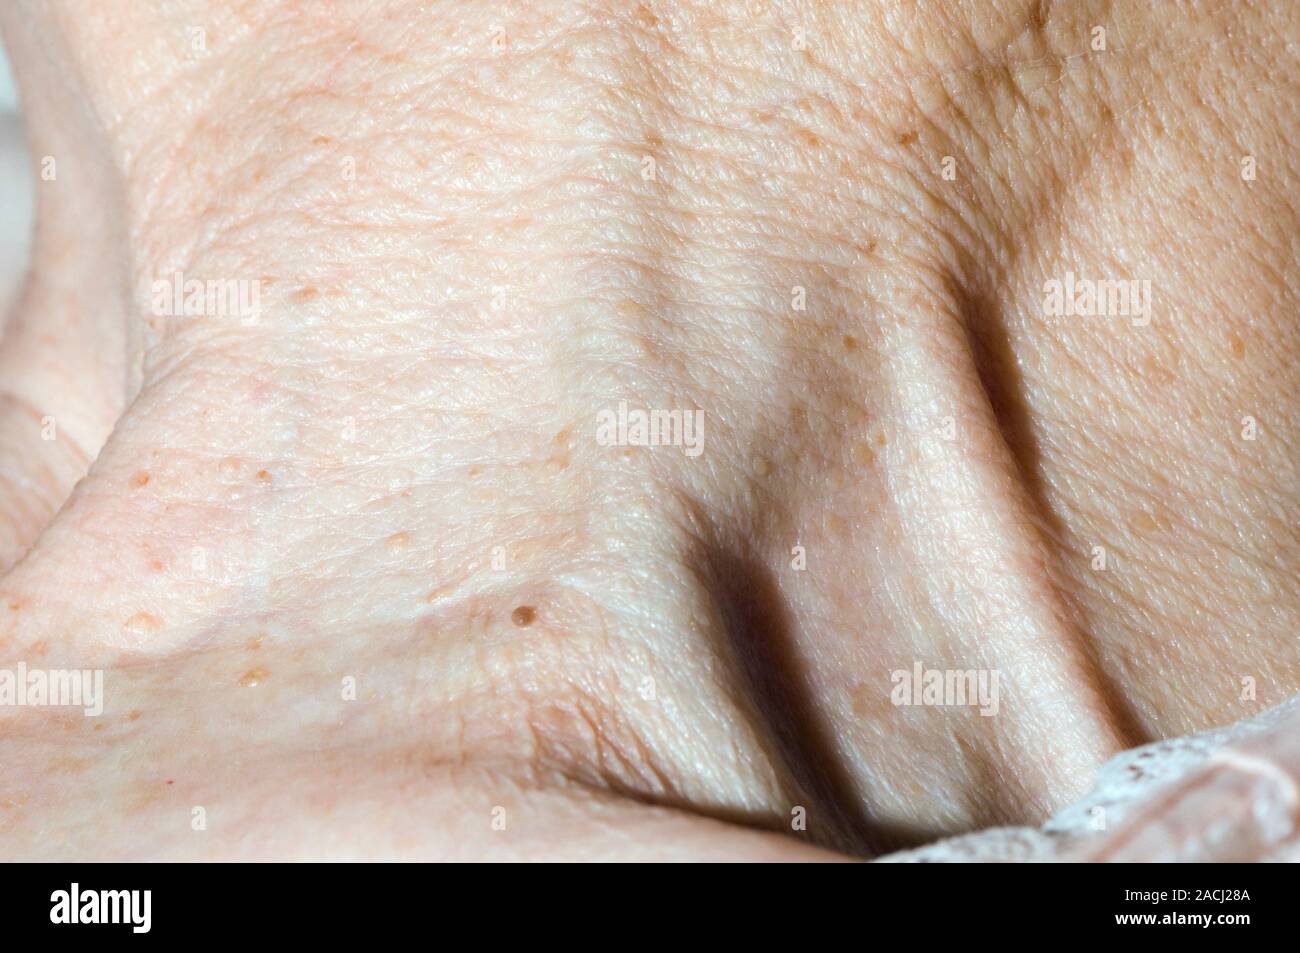 Vue de la veine jugulaire gonflée (au centre) dans le cou d'une ...